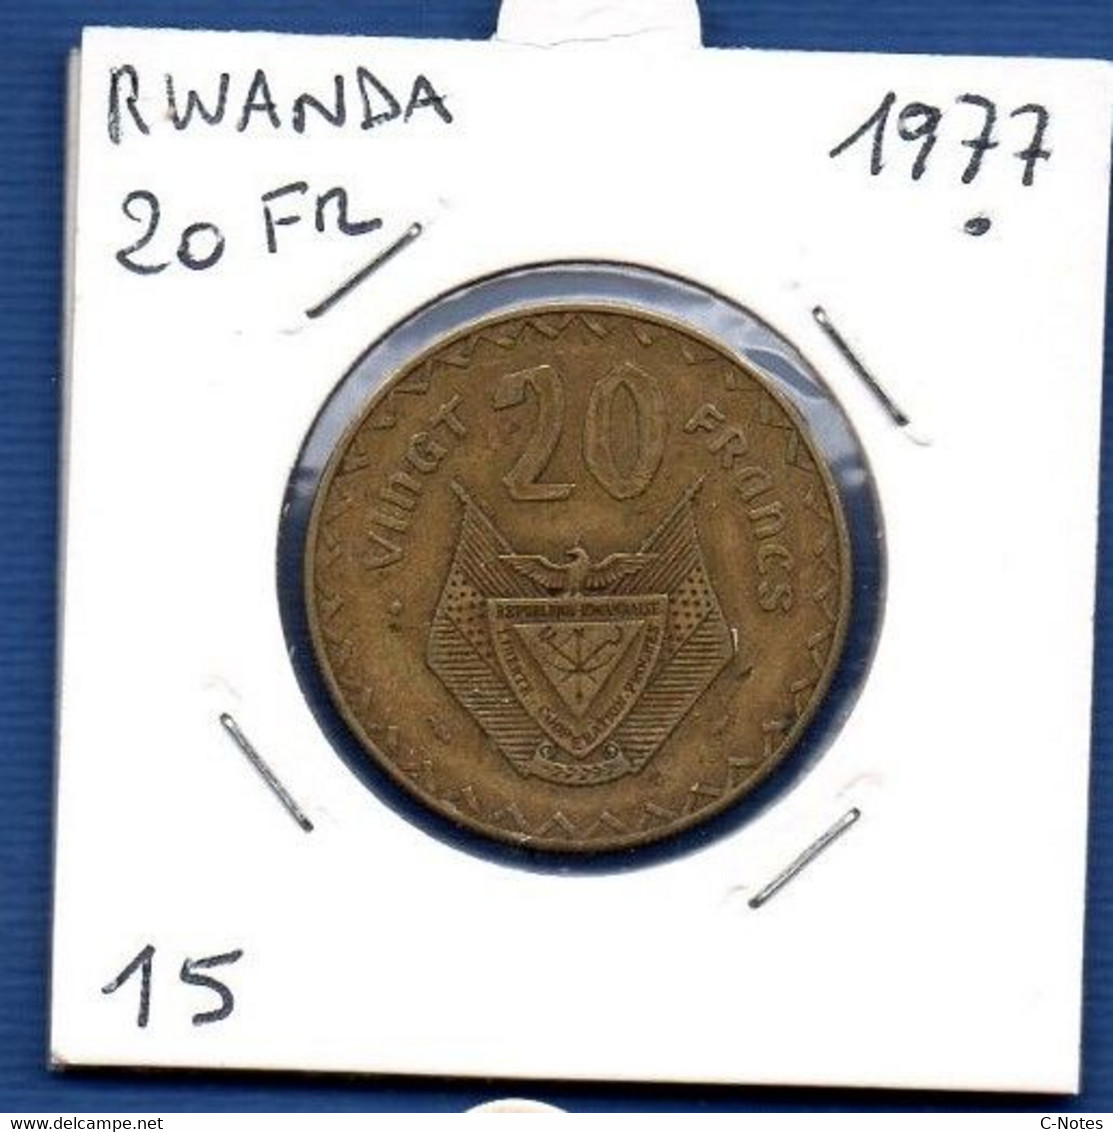 RWANDA - 20 Francs 1977 - See Photos - Km 15 - Rwanda